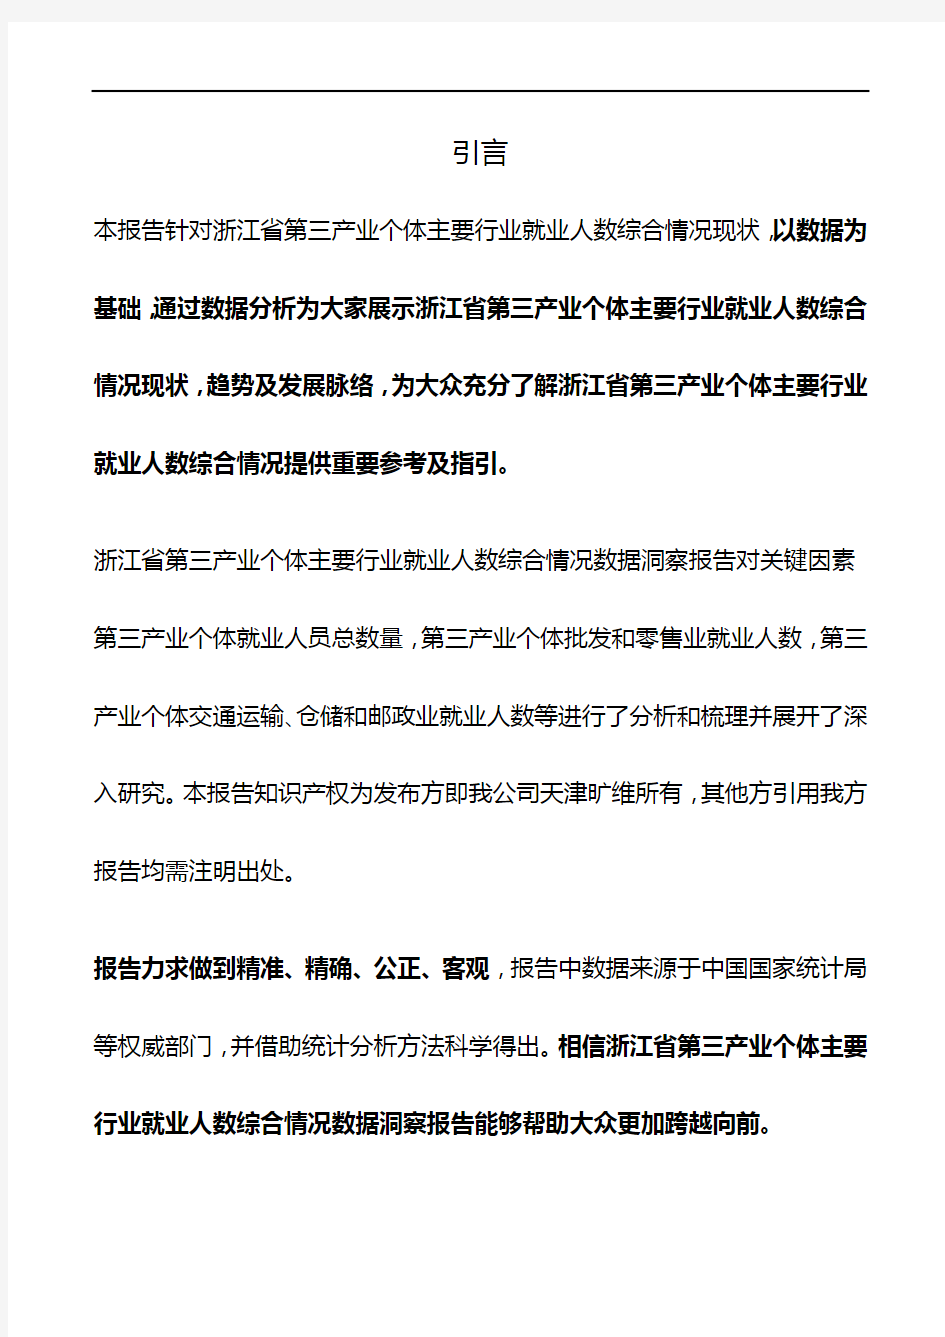 浙江省第三产业个体主要行业就业人数综合情况3年数据洞察报告2019版